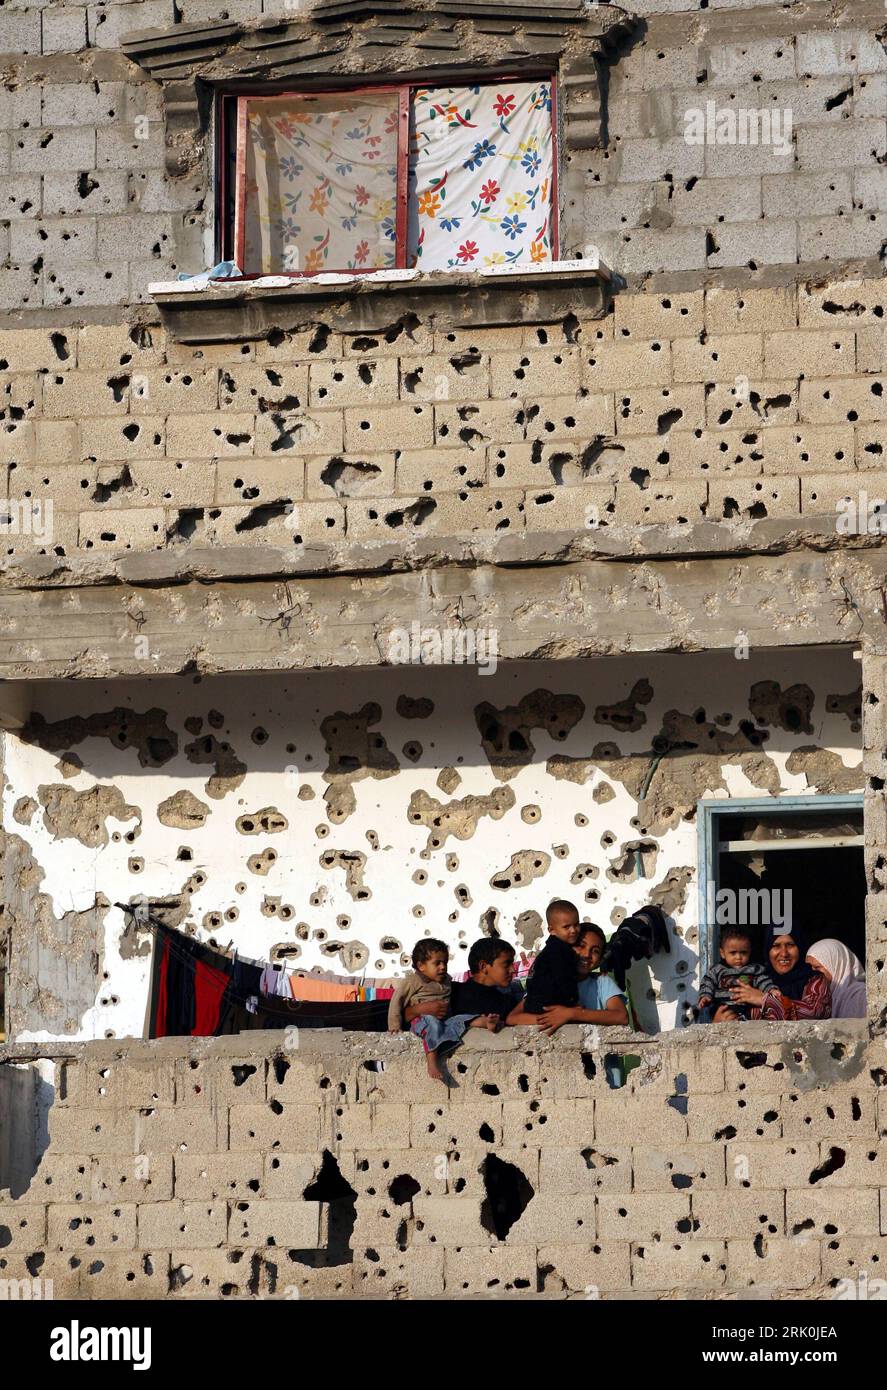 Bildnummer: 52751616 Datum: 26.10.2008 Copyright: imago/Xinhua Palästinensische Familie steht auf dem Balkon in einem von kugeln durchlöchertem Haus in Gaza Stadt - PUBLICATIONxNOTxINxCHN , Gebäude, außen Außenansicht , Personen , highlight , premiumd; 2008, Gaza, Palästina, Palästinensische Autonomiegebiete, Israel, Gazastreifen, durchlöchert, Wohnhaus, Nahostkonflikt; , hoch, Kbdig, Einzelbild, Wohngebäude, , Gesellschaft o0 Asien, Einschusslöcher, Fassade Bildnummer 52751616 Data 26 10 2008 Copyright Imago XINHUA Palestinian Family is on the Balcony in a from Balls House in Gaza ci Foto Stock